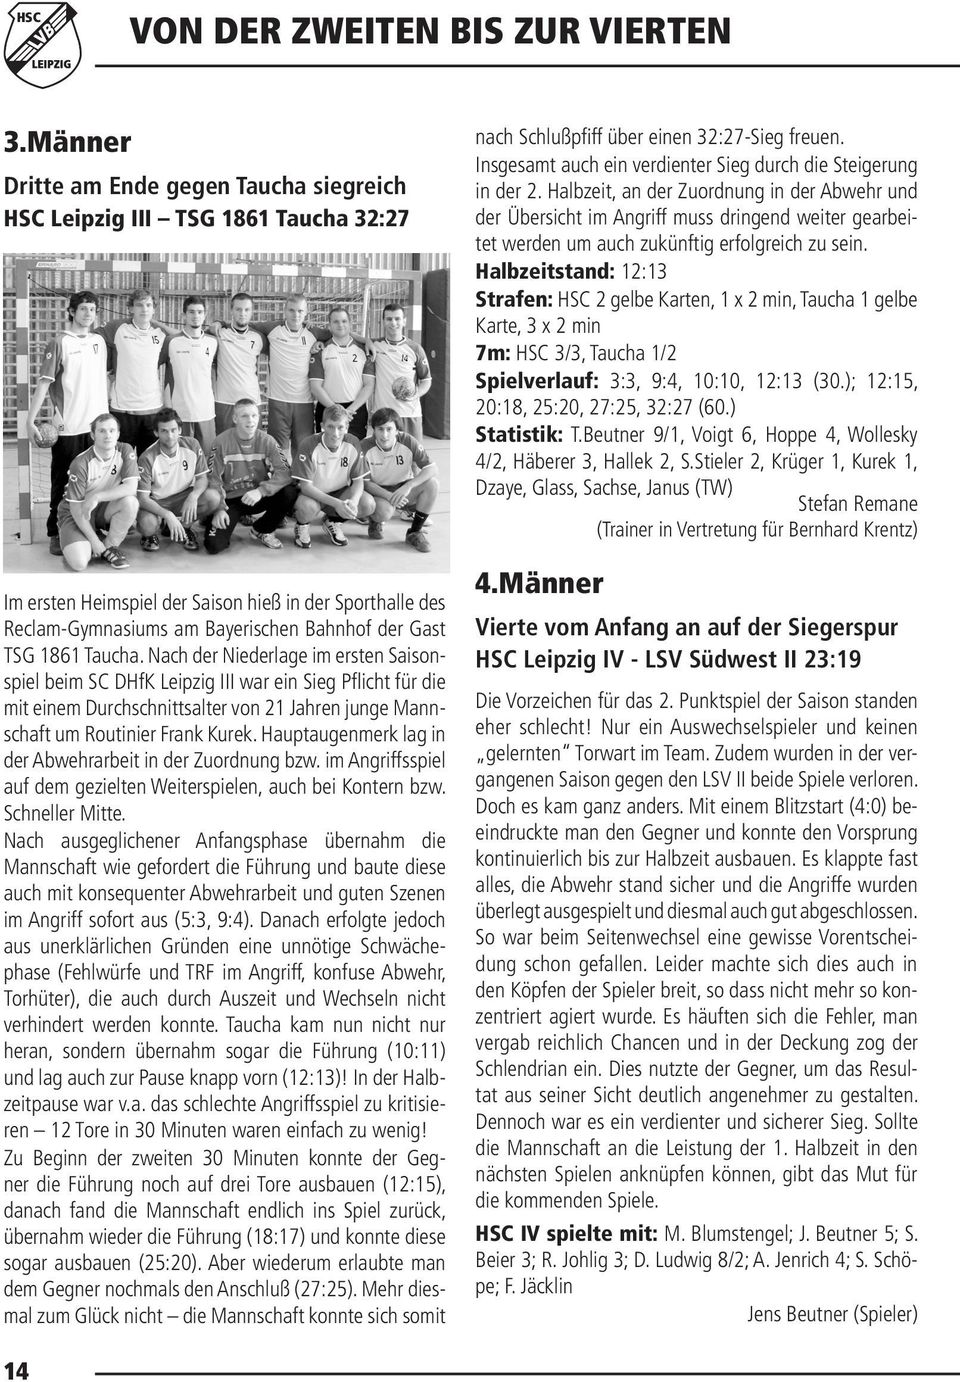 Taucha. Nach der Niederlage im ersten Saisonspiel beim SC DHfK Leipzig III war ein Sieg Pflicht für die mit einem Durchschnittsalter von 21 Jahren junge Mannschaft um Routinier Frank Kurek.